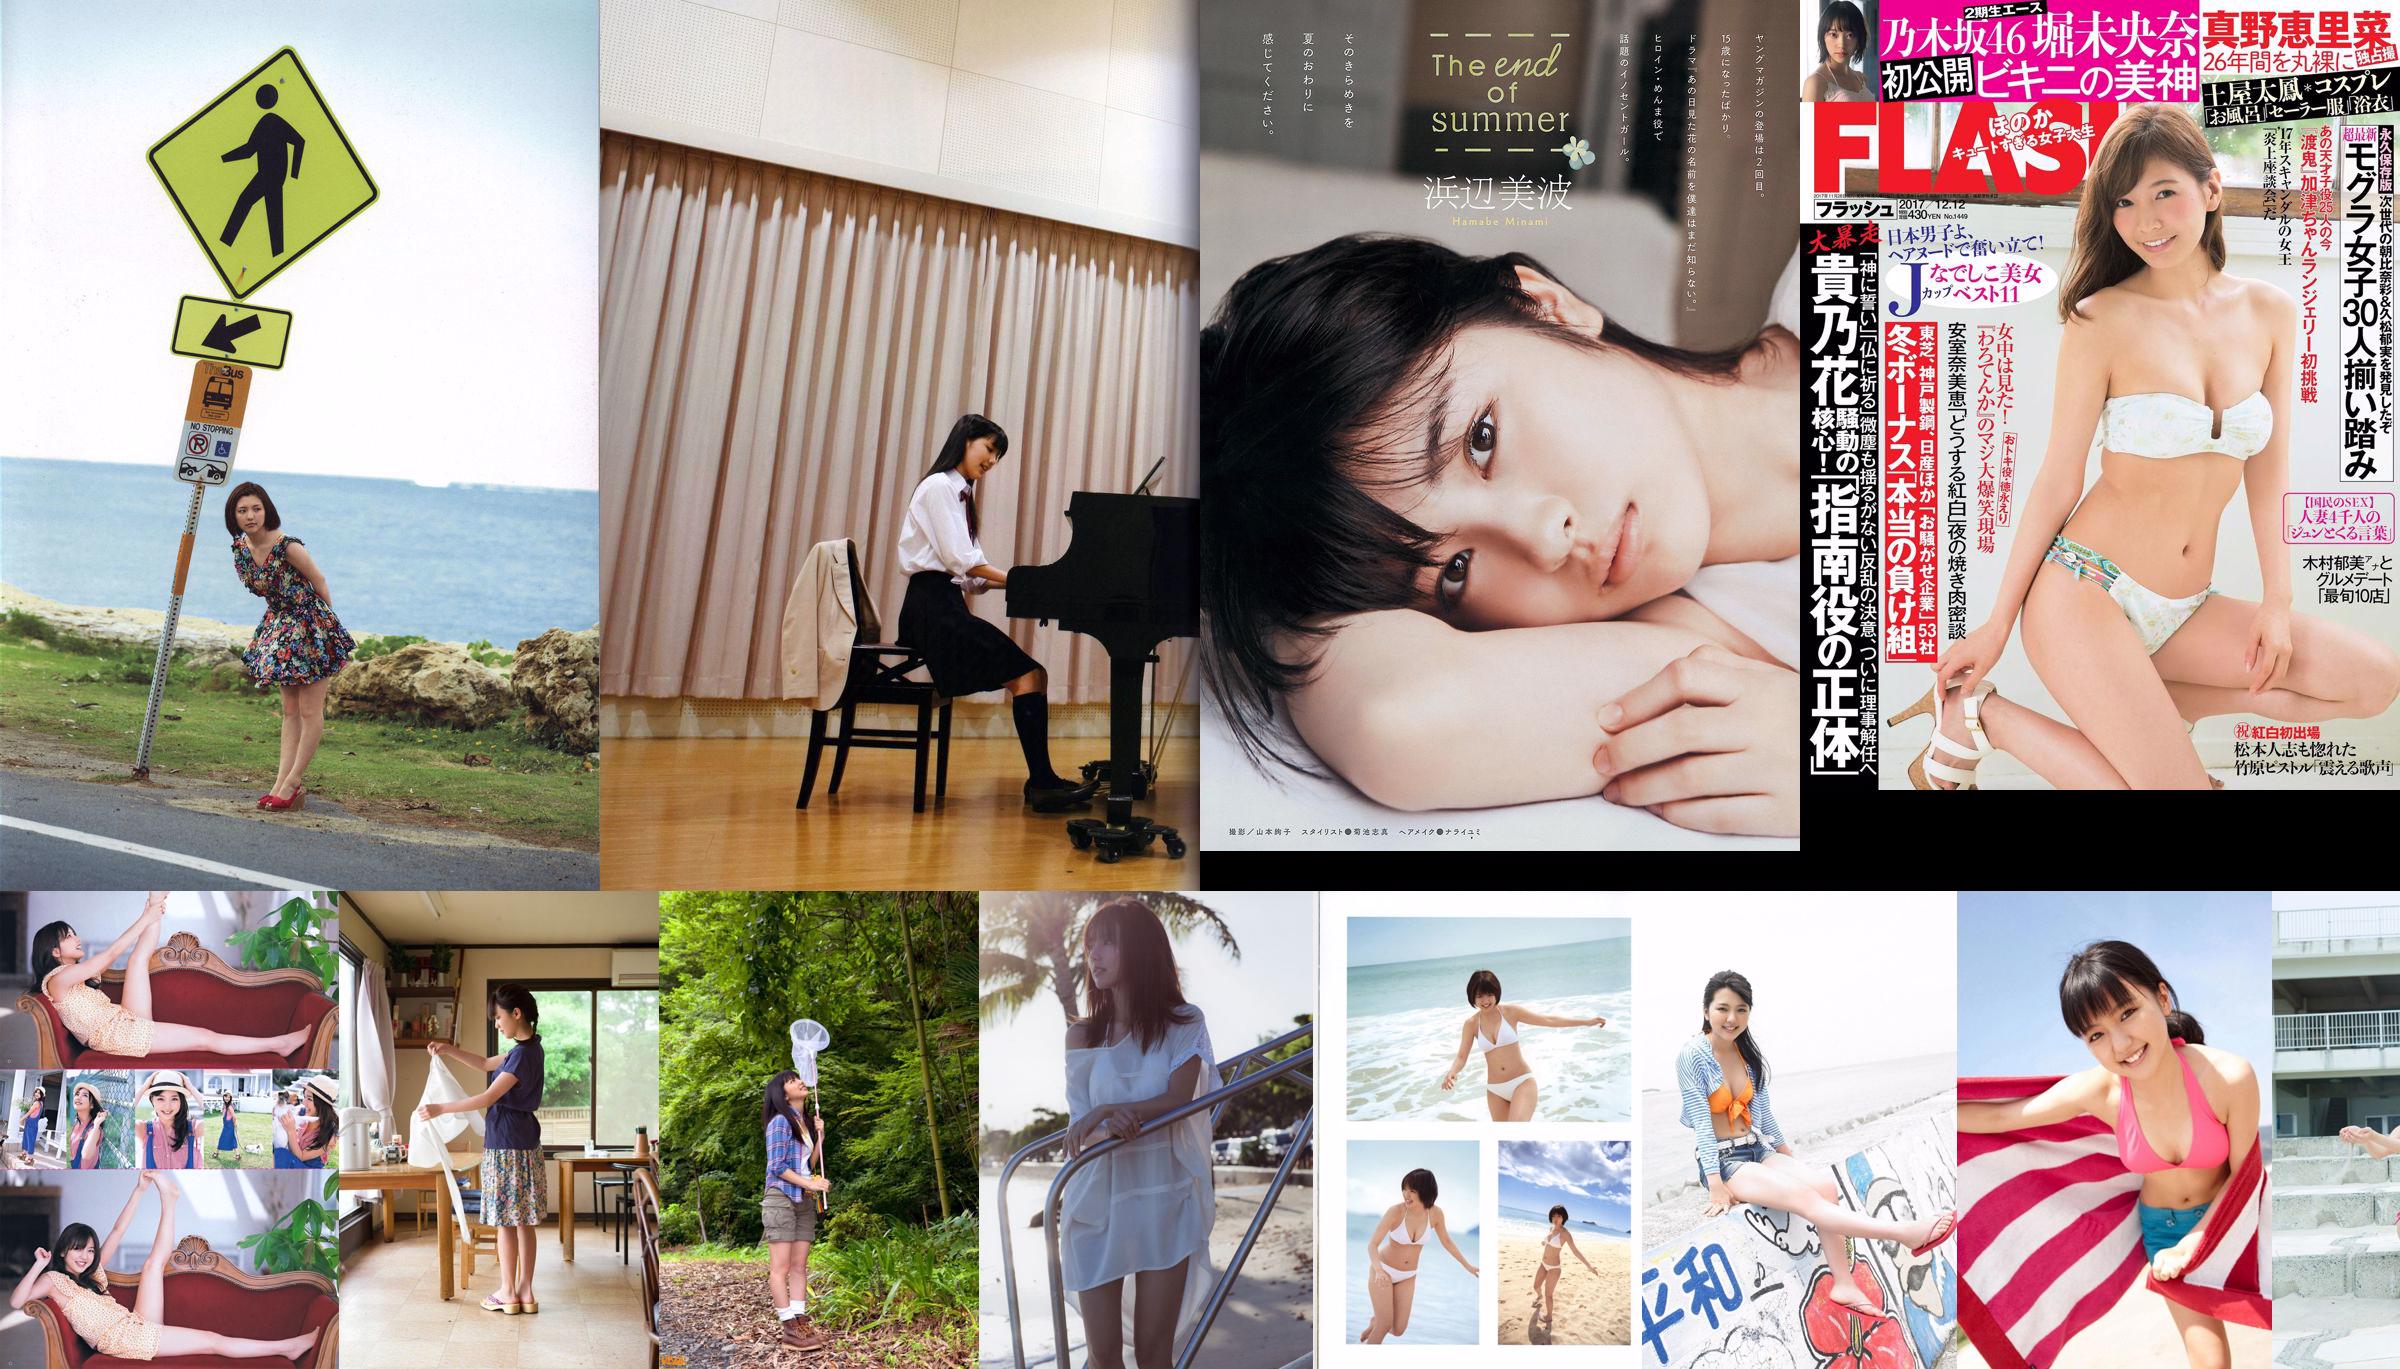 Erina Mano Kanna Hashimoto Yuna Shirakawa [Salto joven semanal] 2014 No.14 Fotografía No.5a39ed Página 18